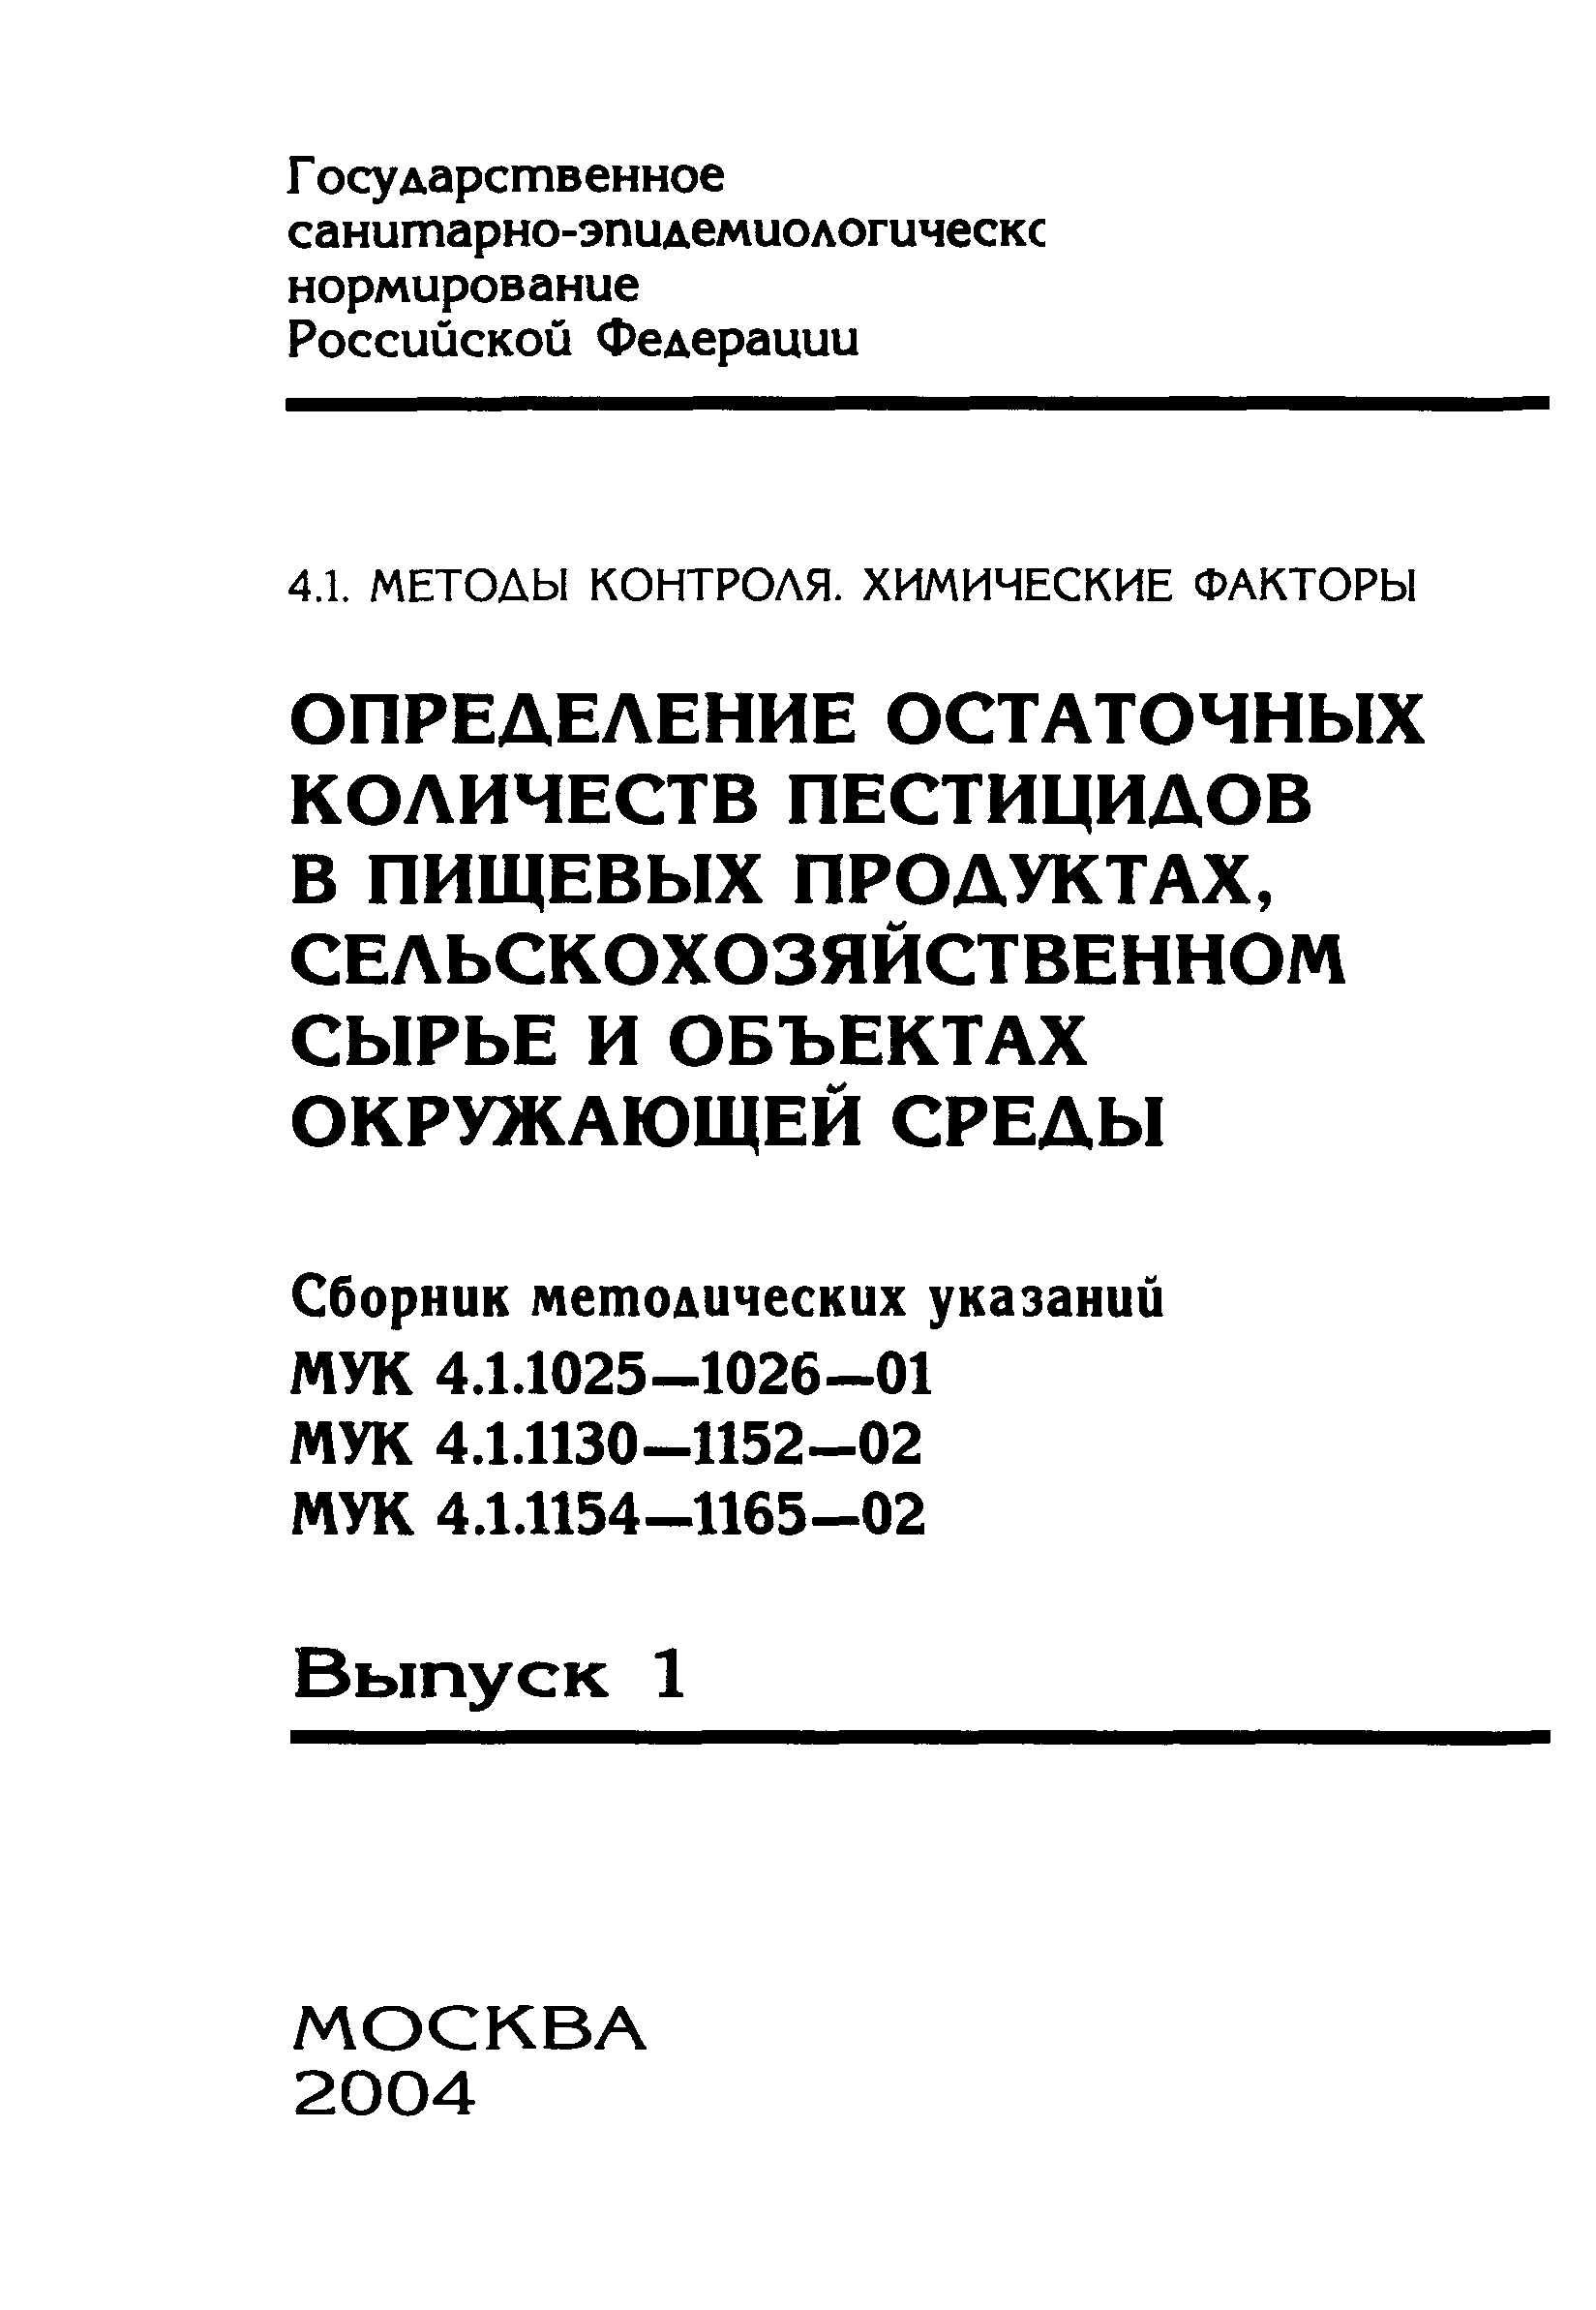 МУК 4.1.1130-02